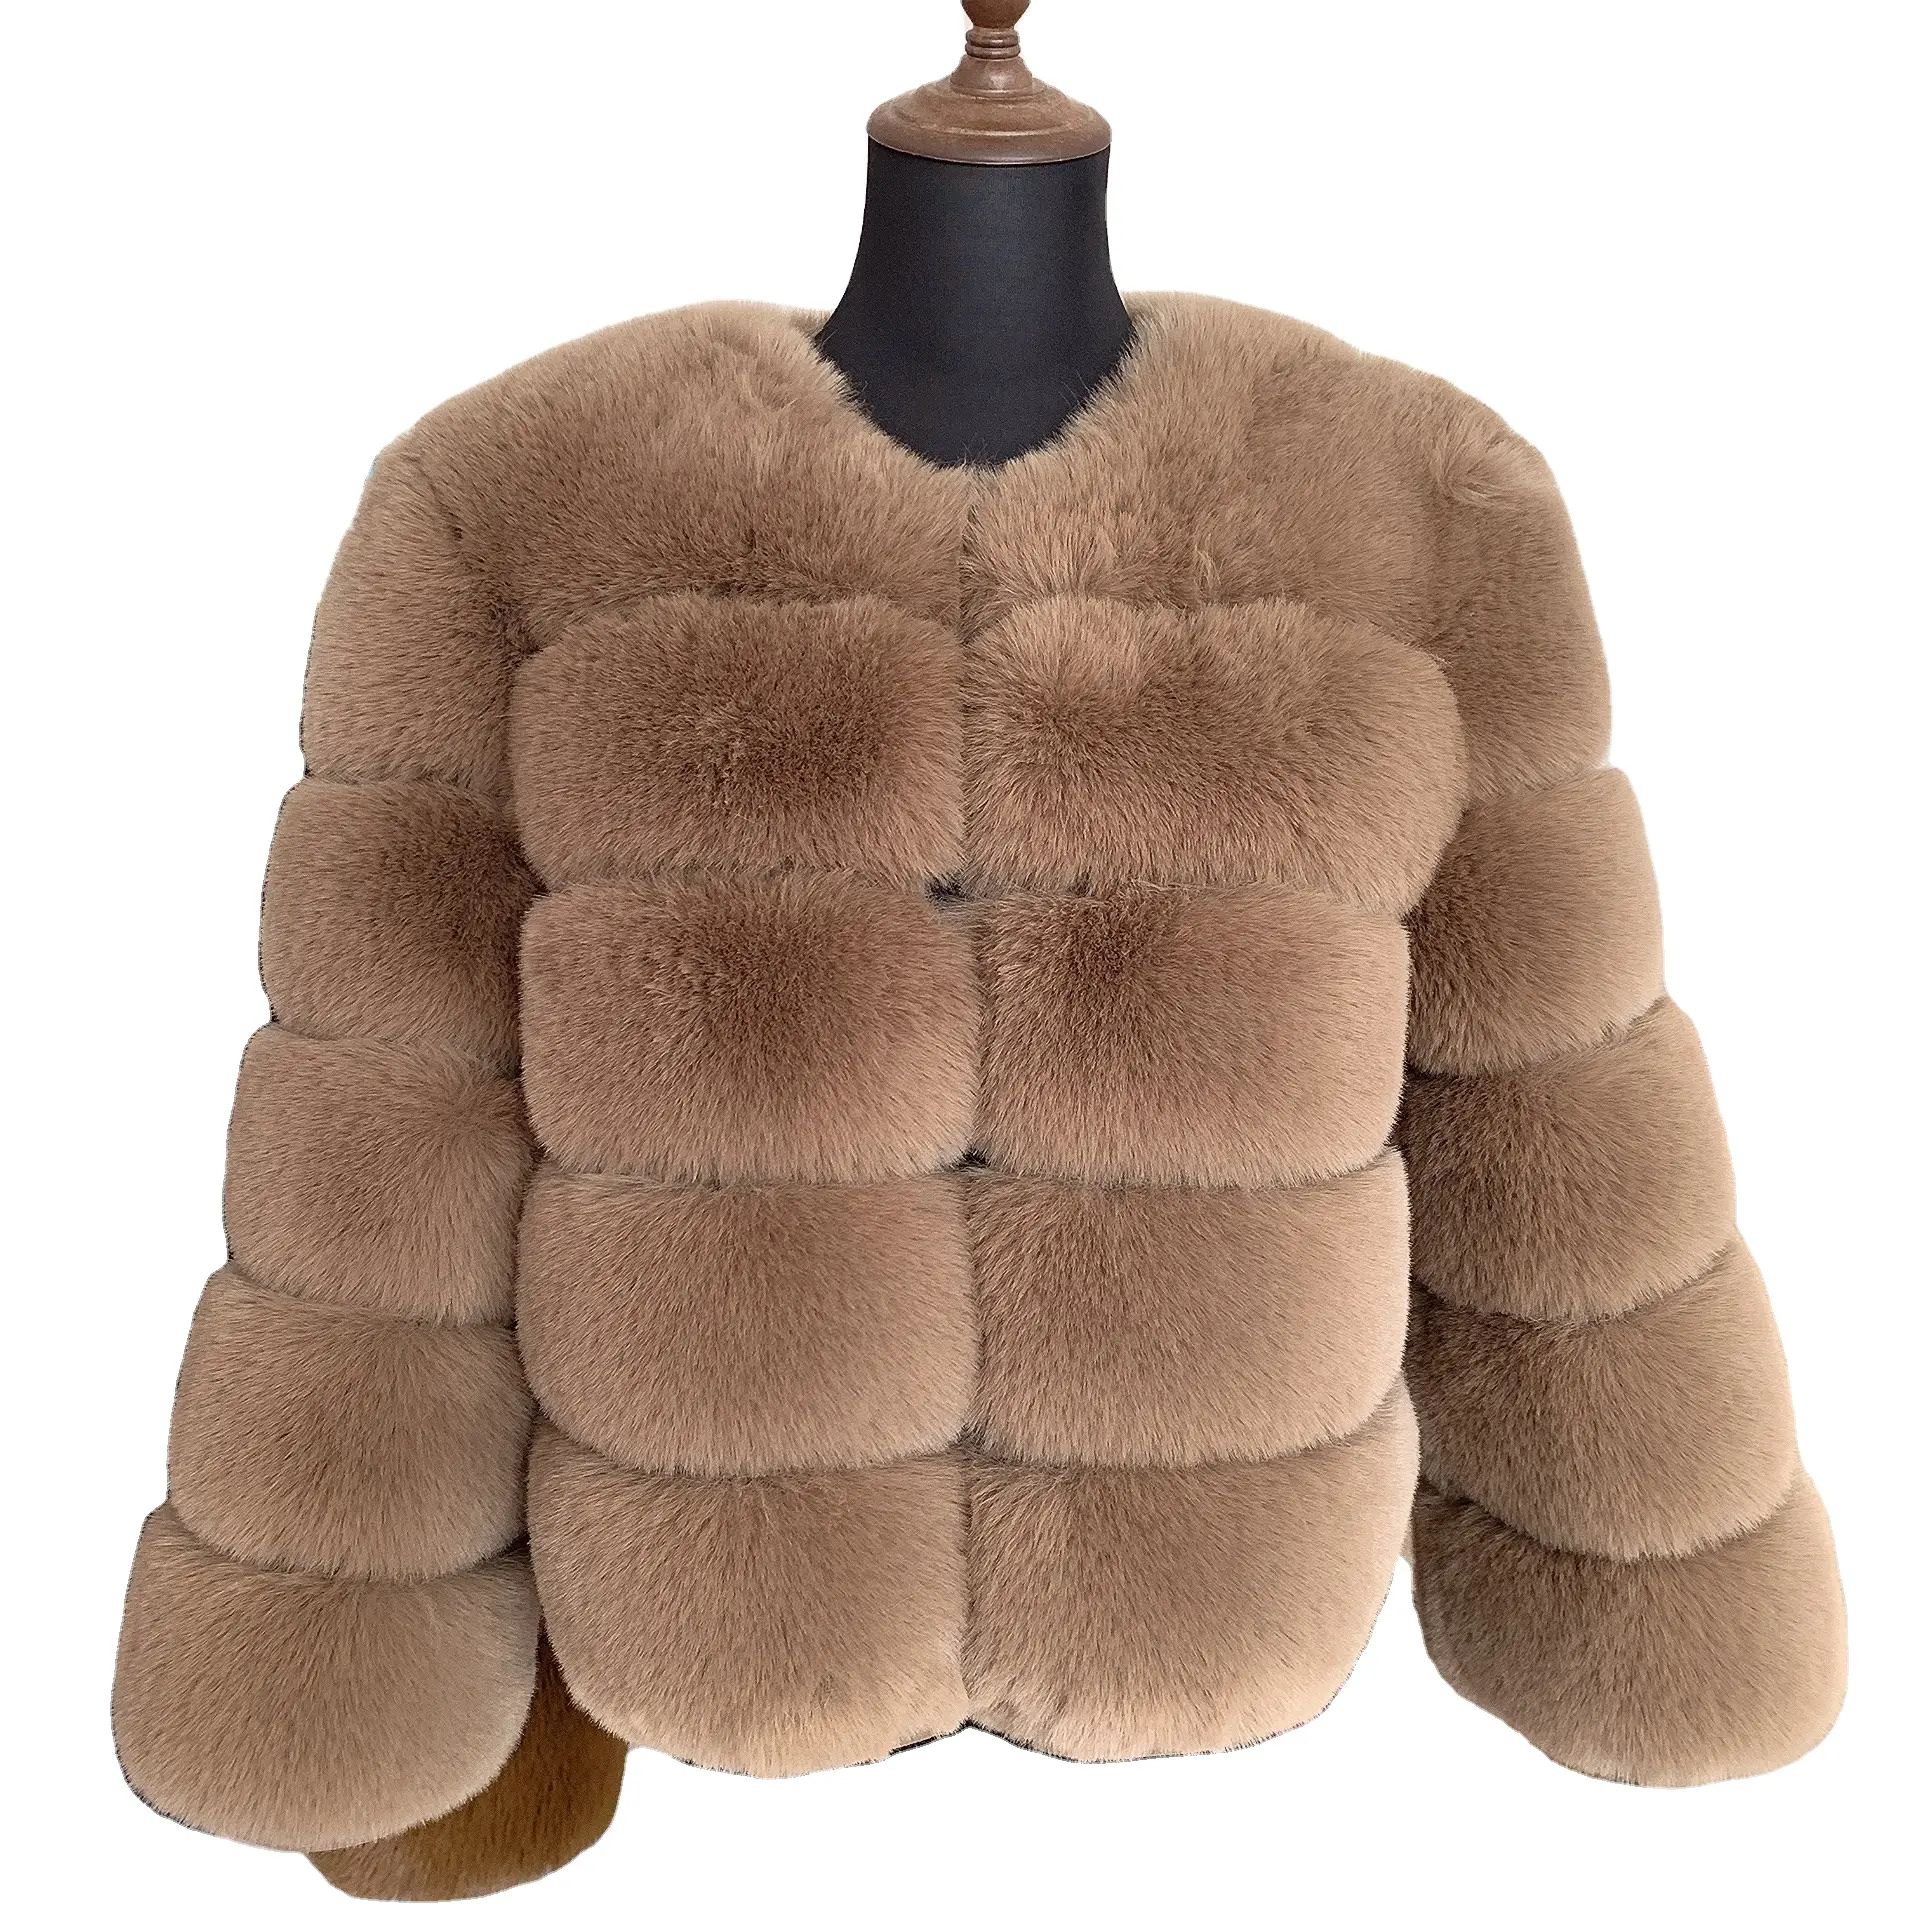 2022 imitation fourrure de renard manteau hiver femmes chaud mode manteau de fourrure artificielle